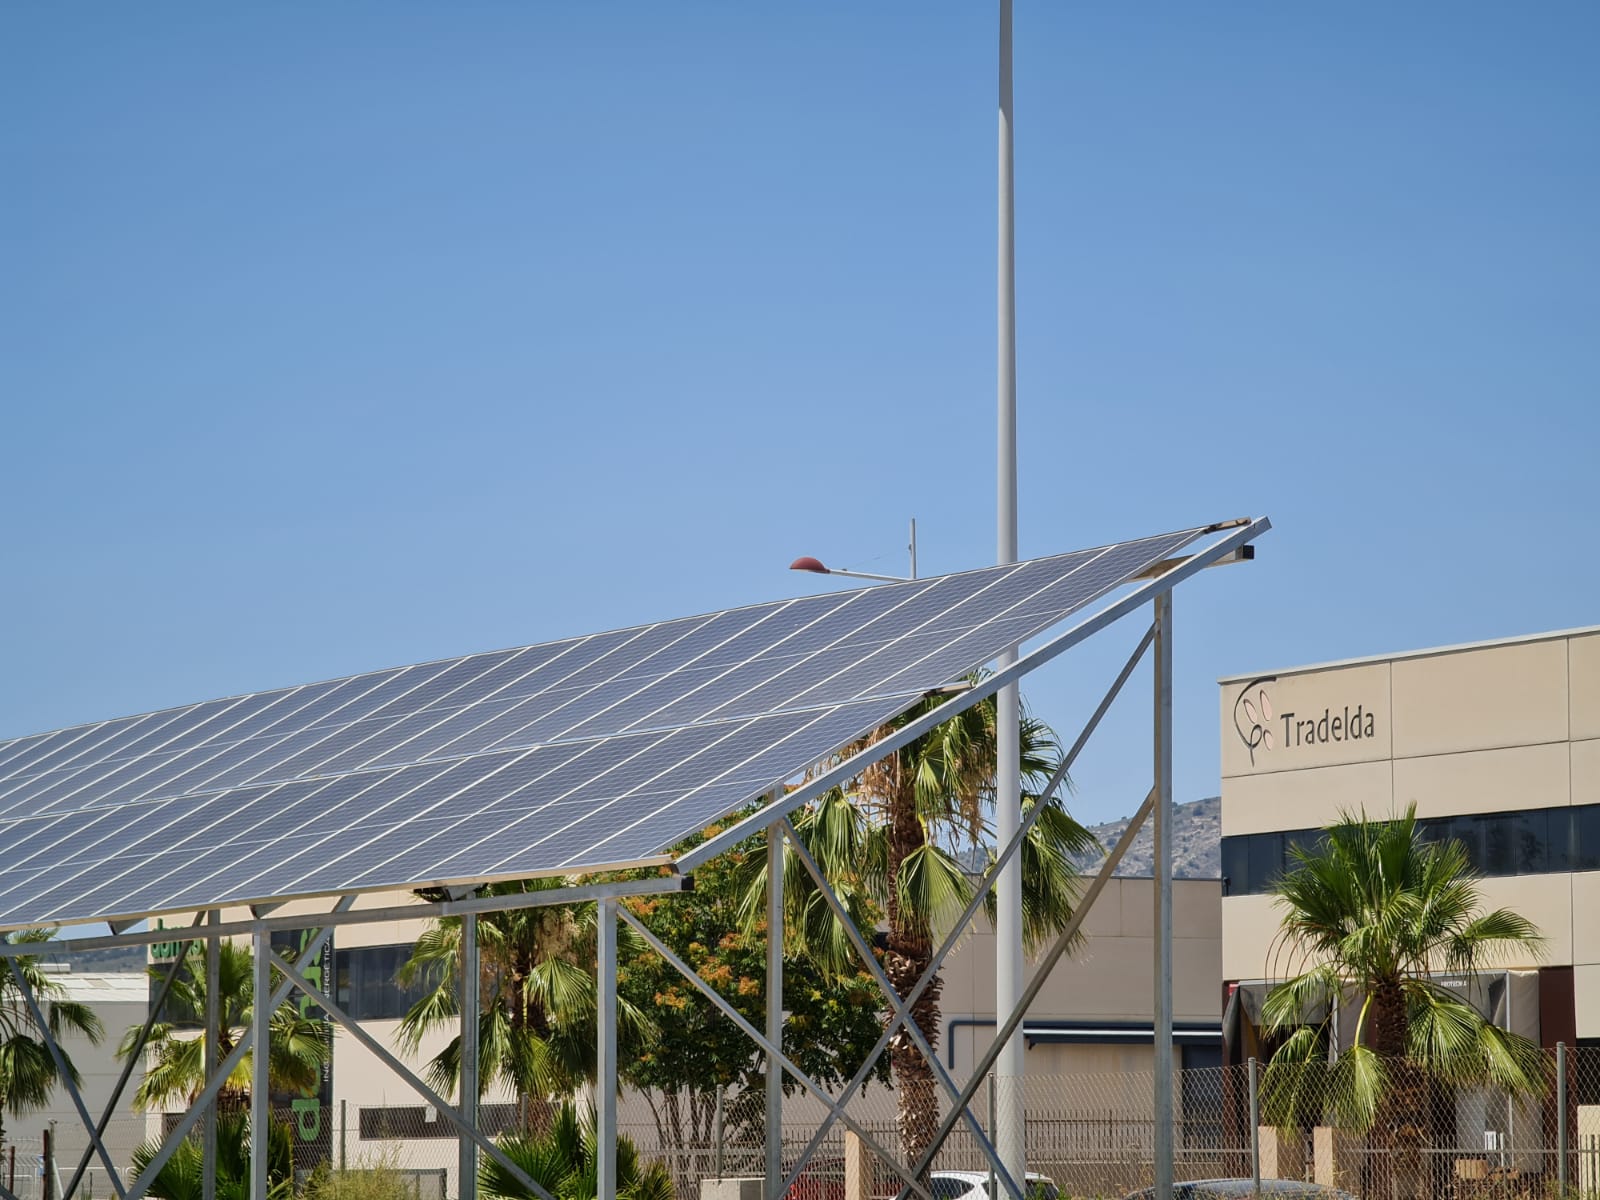 El Ayuntamiento de Elda instala placas fotovoltaicas en los polígonos industriales Finca Lacy y Torreta Río para fomentar el autoconsumo y ahorrar en la factura de la luz